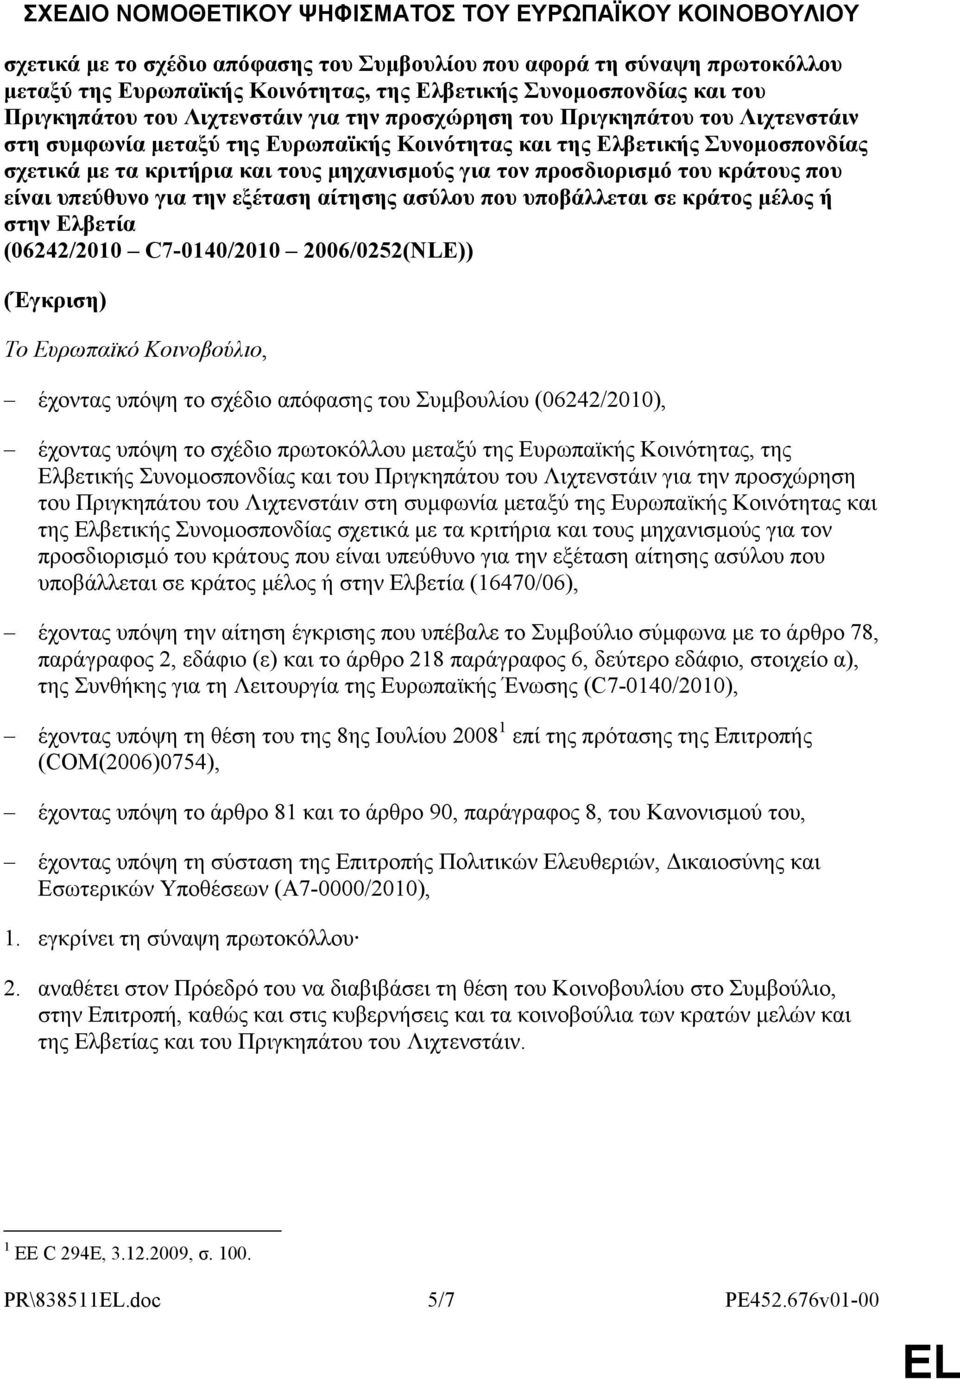 μηχανισμούς για τον προσδιορισμό του κράτους που είναι υπεύθυνο για την εξέταση αίτησης ασύλου που υποβάλλεται σε κράτος μέλος ή στην Ελβετία (06242/2010 C7-0140/2010 2006/0252(NLE)) (Έγκριση) Το